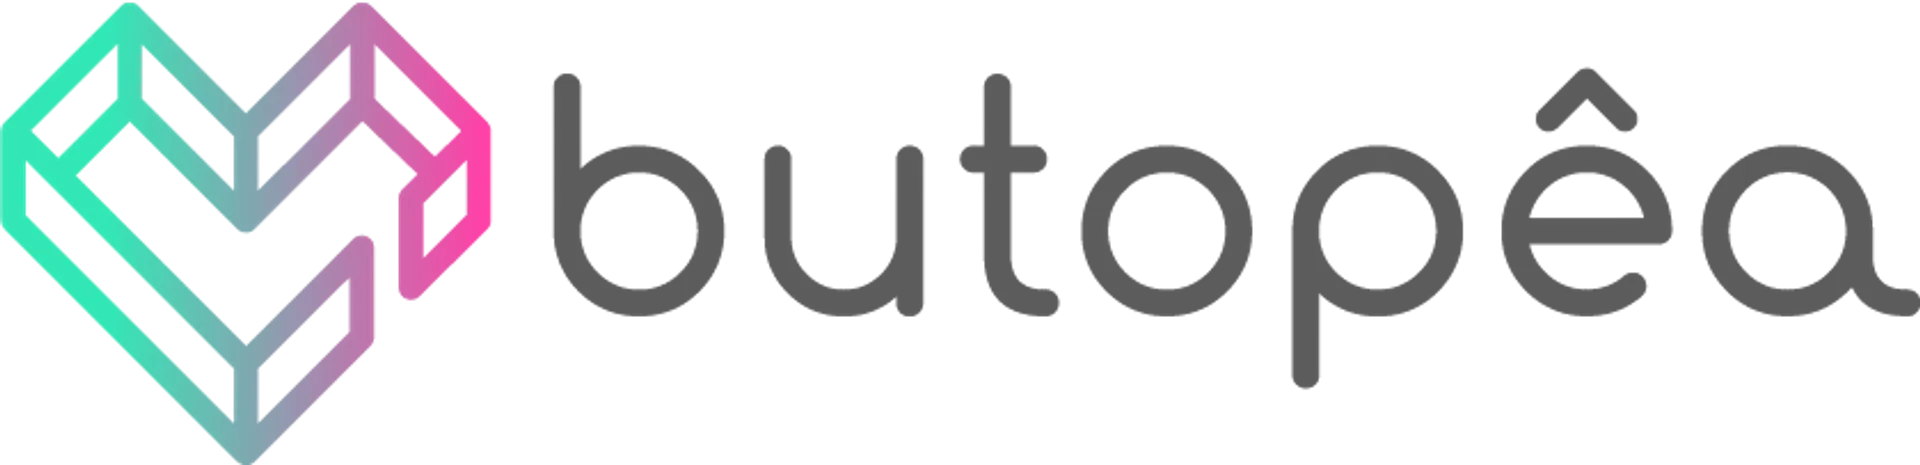 BUTOPEA logo